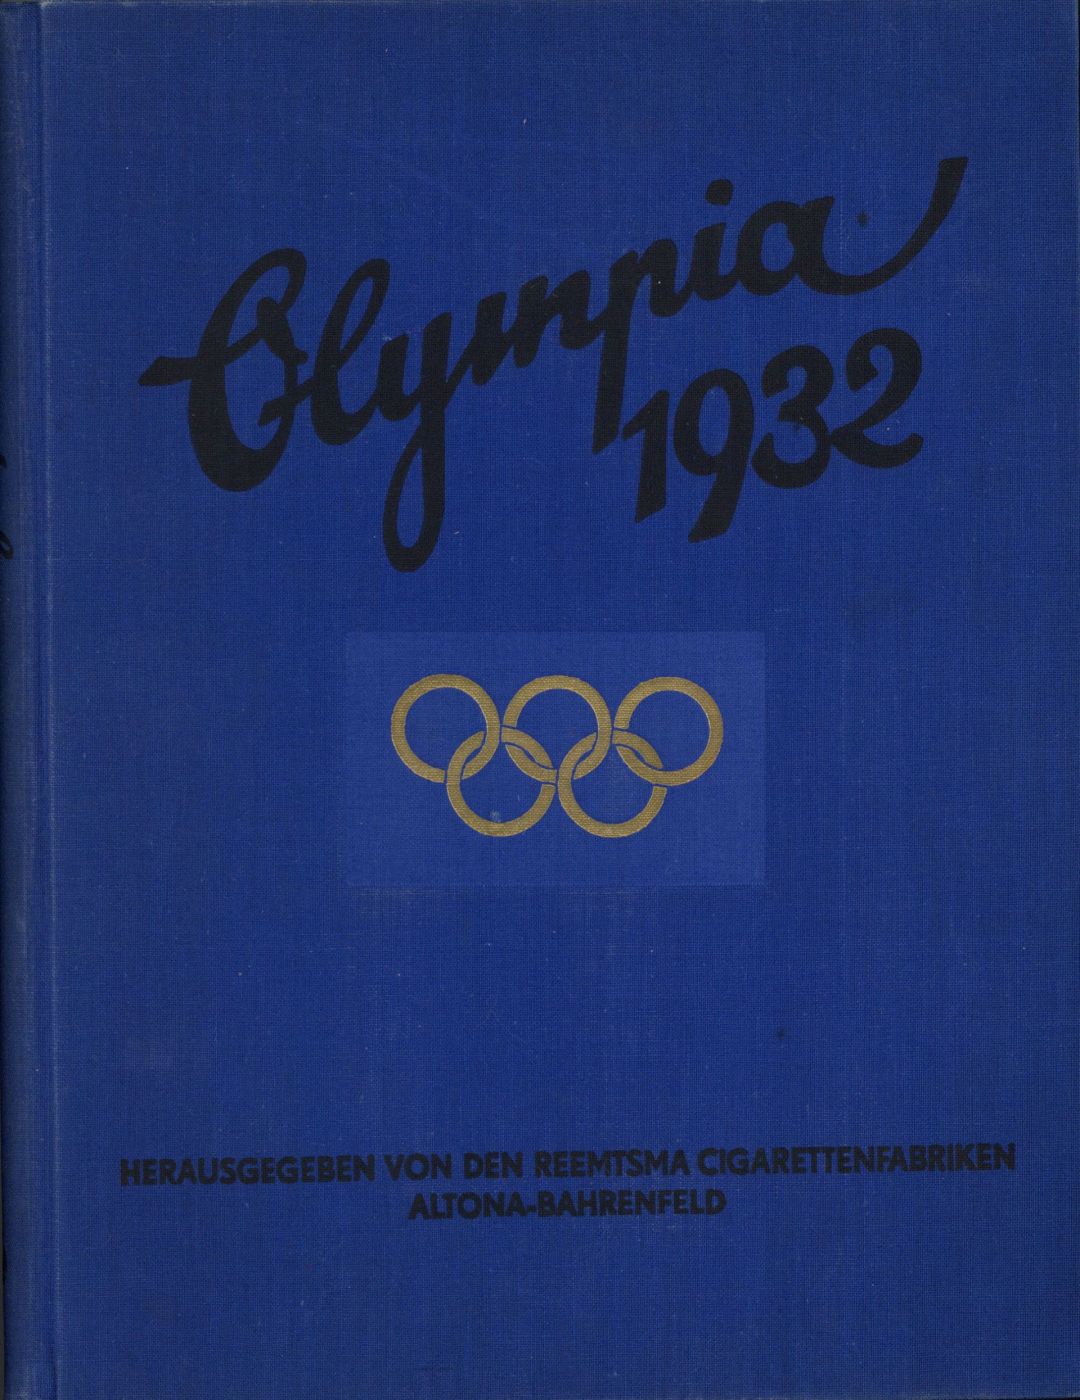 Olympia Album - 1932 Sports Memorabilia